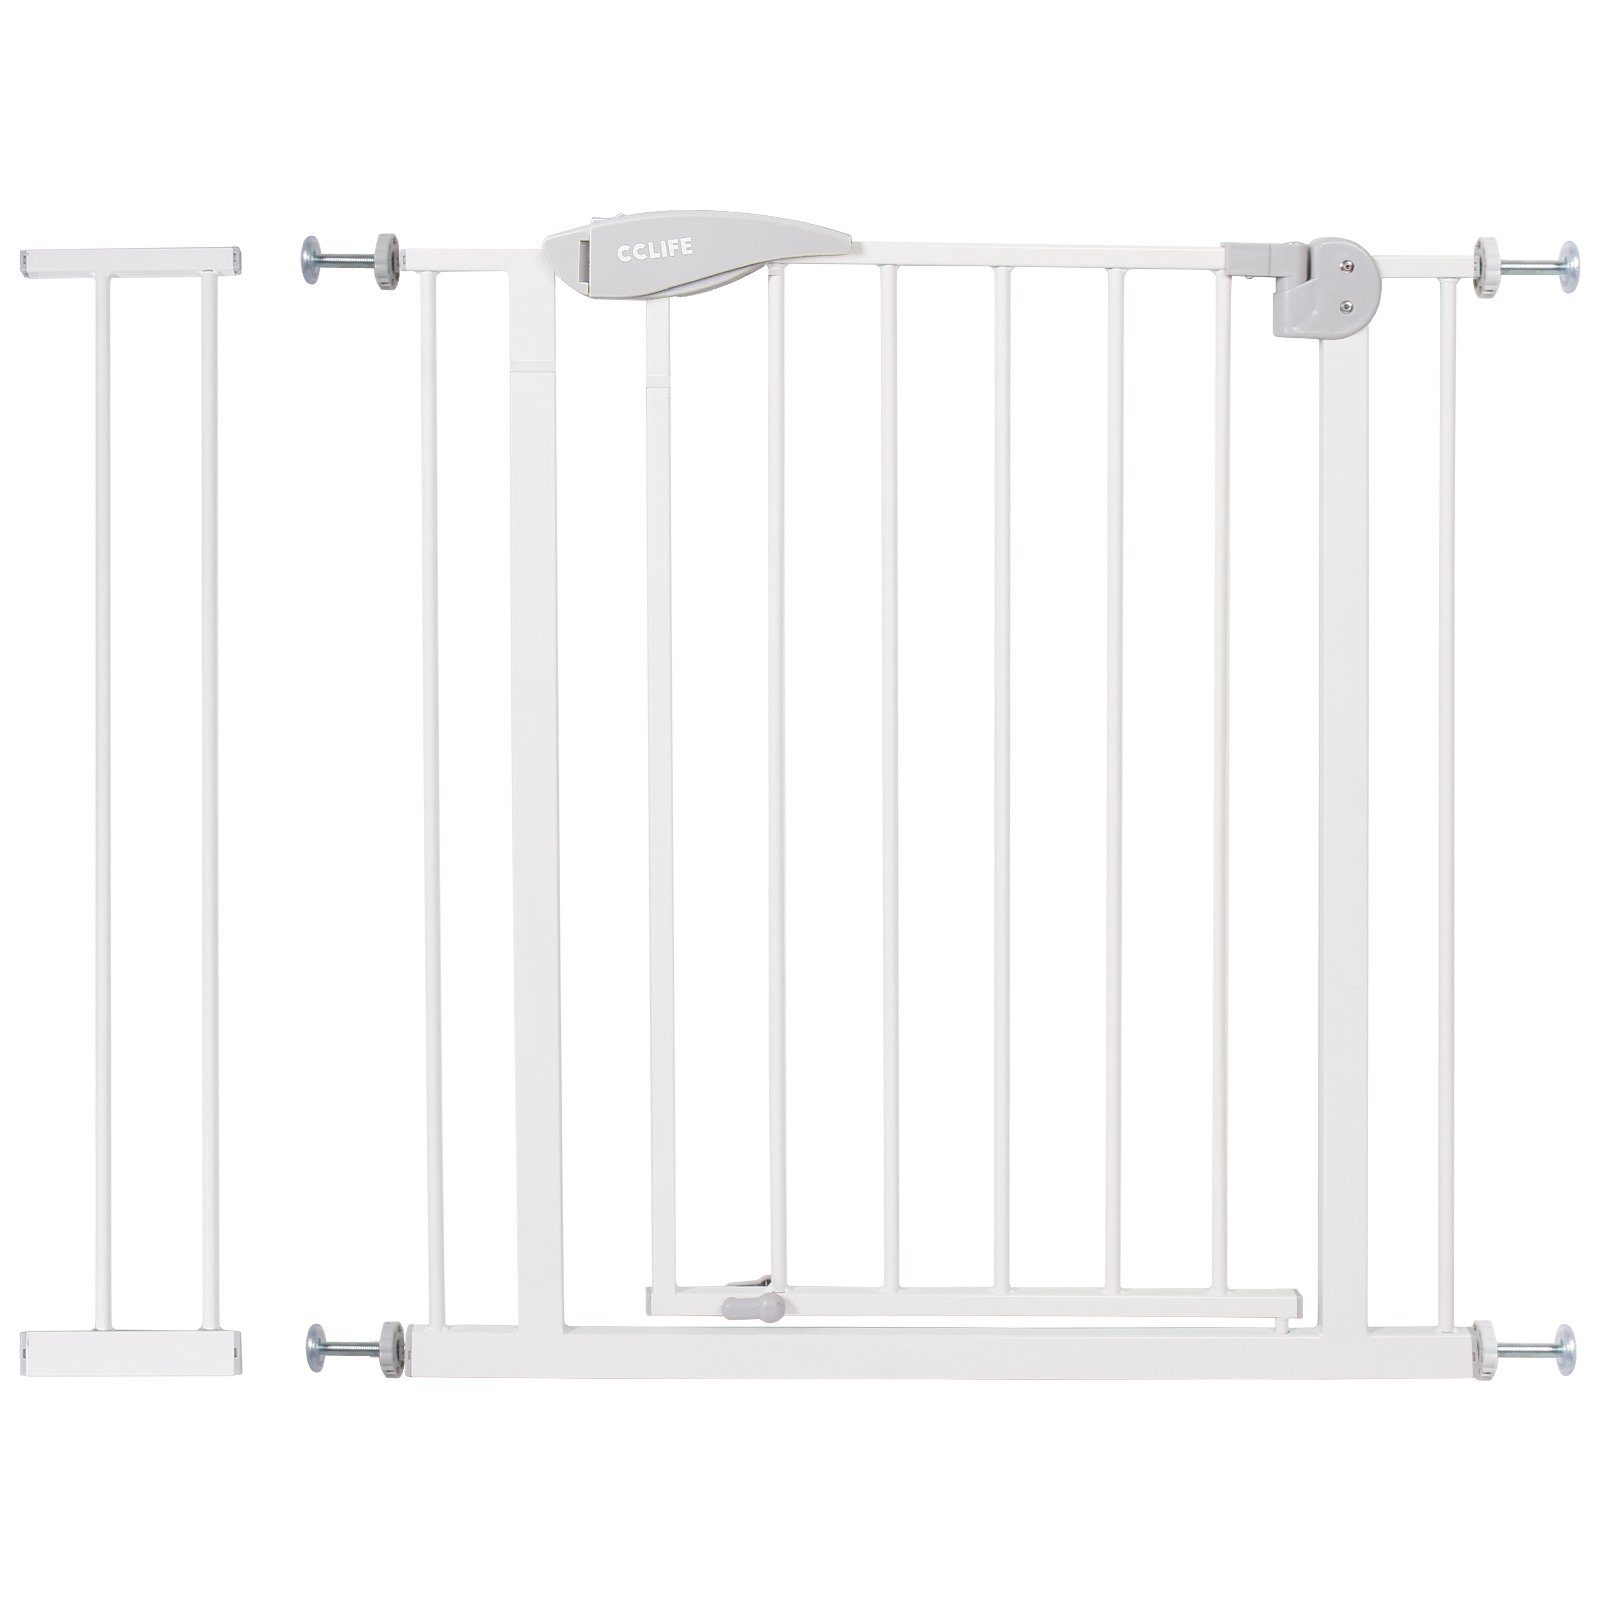 CCLIFE Türschutzgitter CCLIFE Treppenschutzgitter Türschutzgitter Verlängerung, weisses Ohne 75-85 mit Bohren 14cm